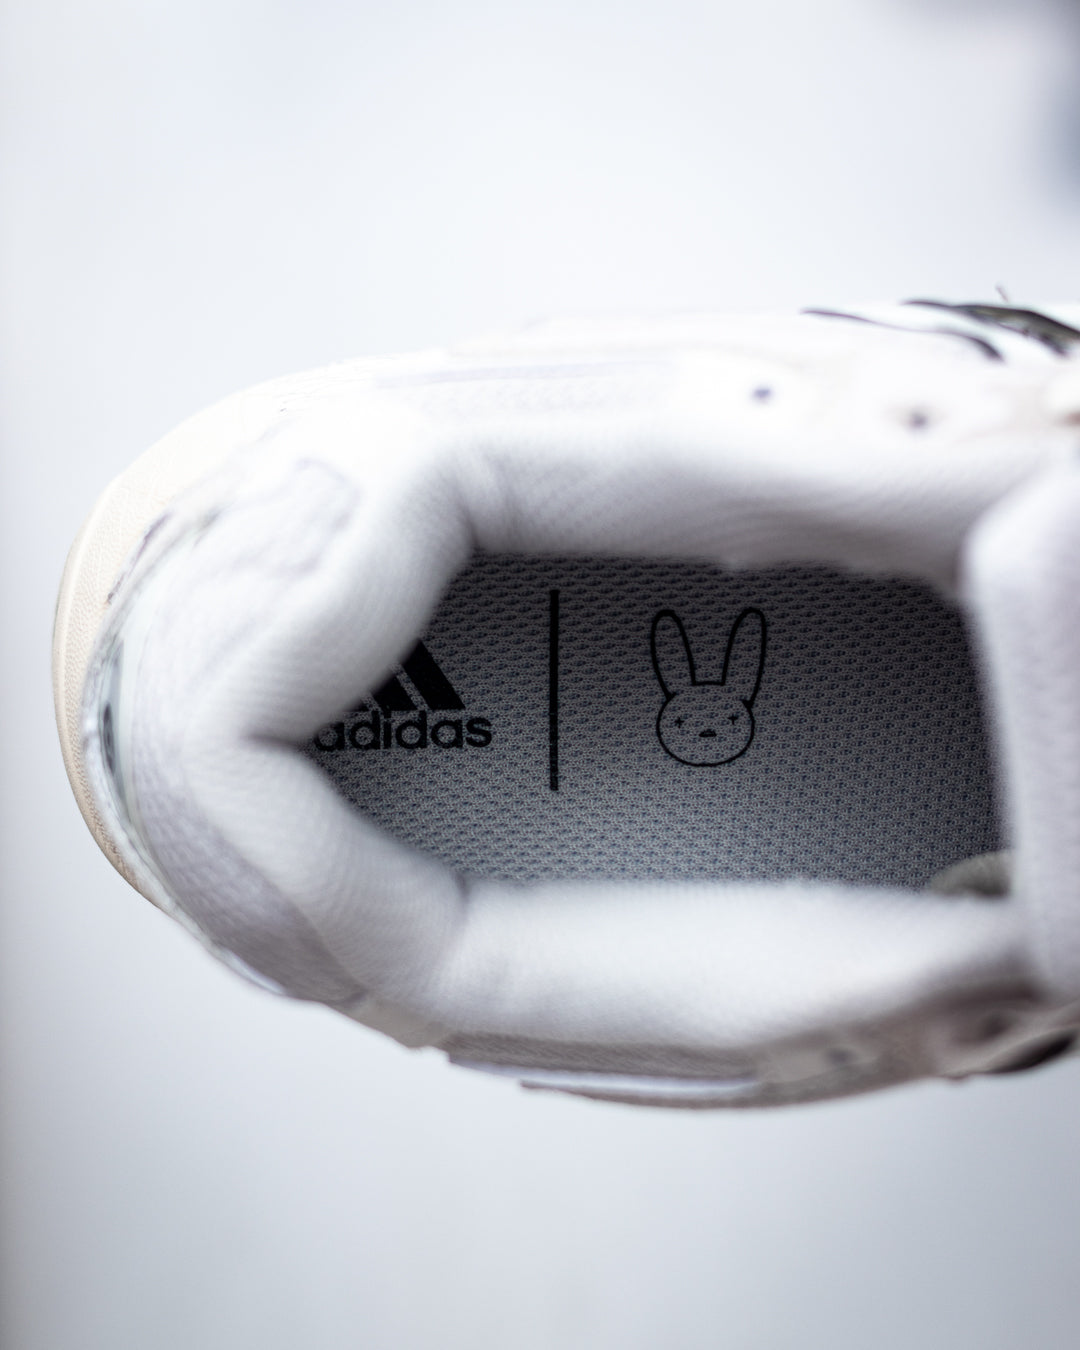 Adidas  Response CL White de adidas x Bad Bunny